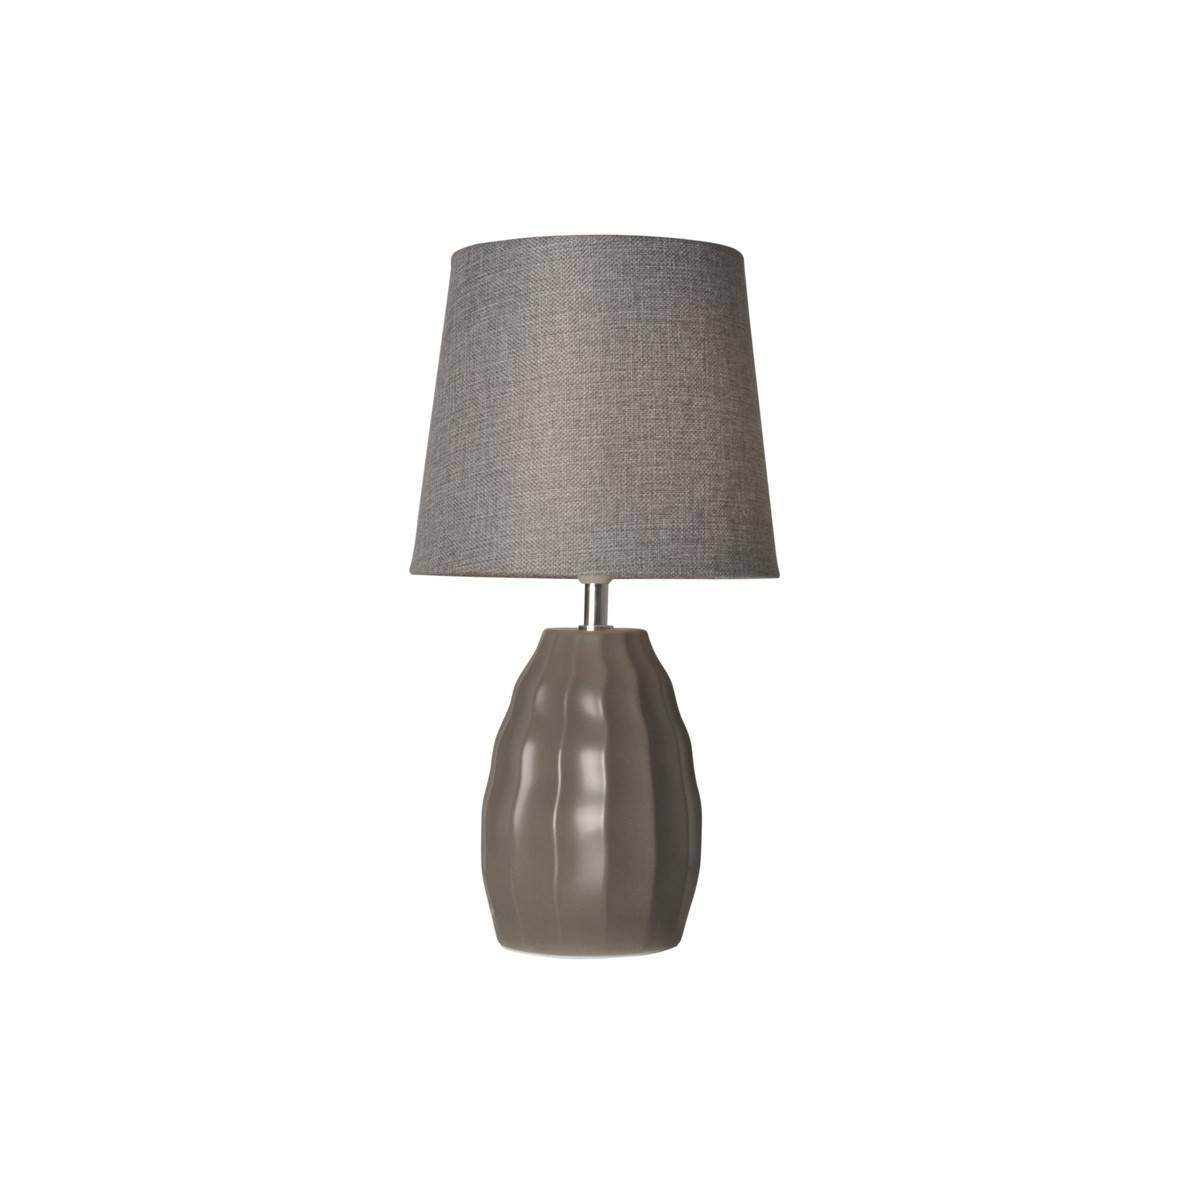 Porzellan-Tischleuchte für das Schlafzimmer - Porzellanlampe - Tischlampe Dunkelgrau